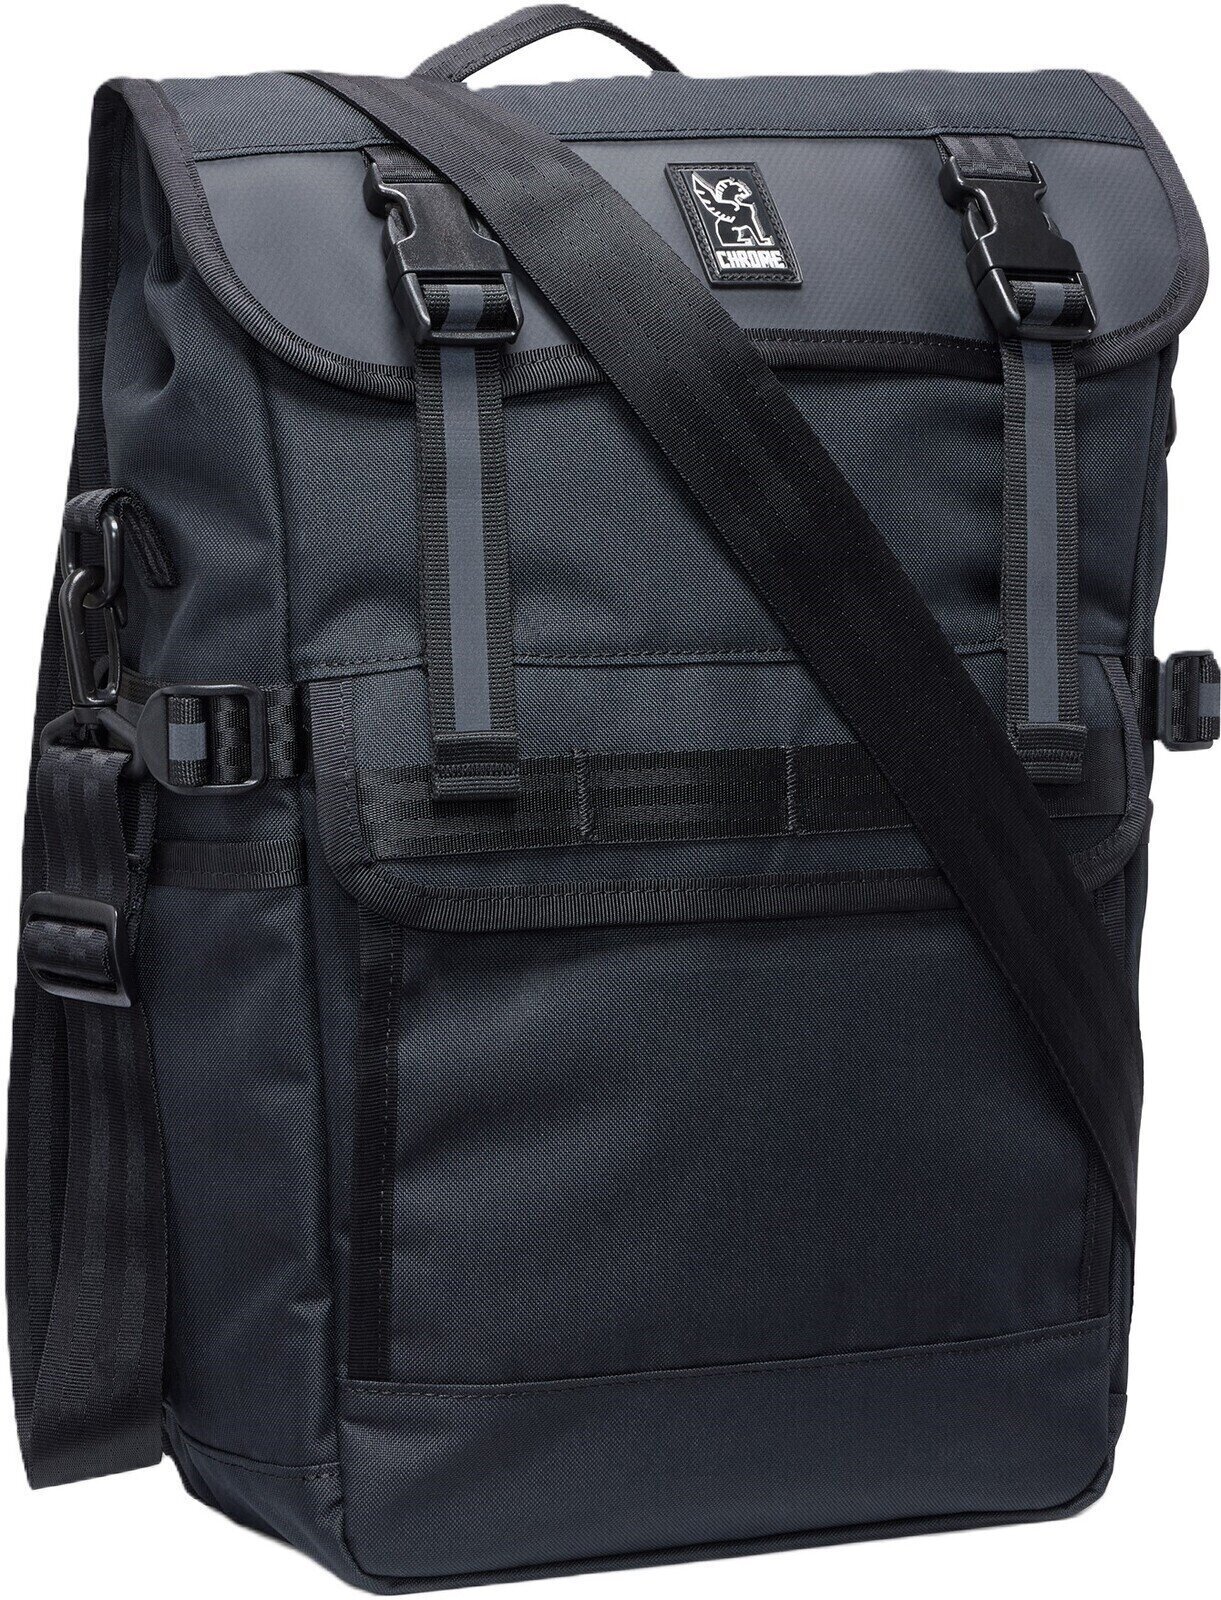 Fahrradtasche Chrome Holman Pannier Bag Black 15 - 20 L